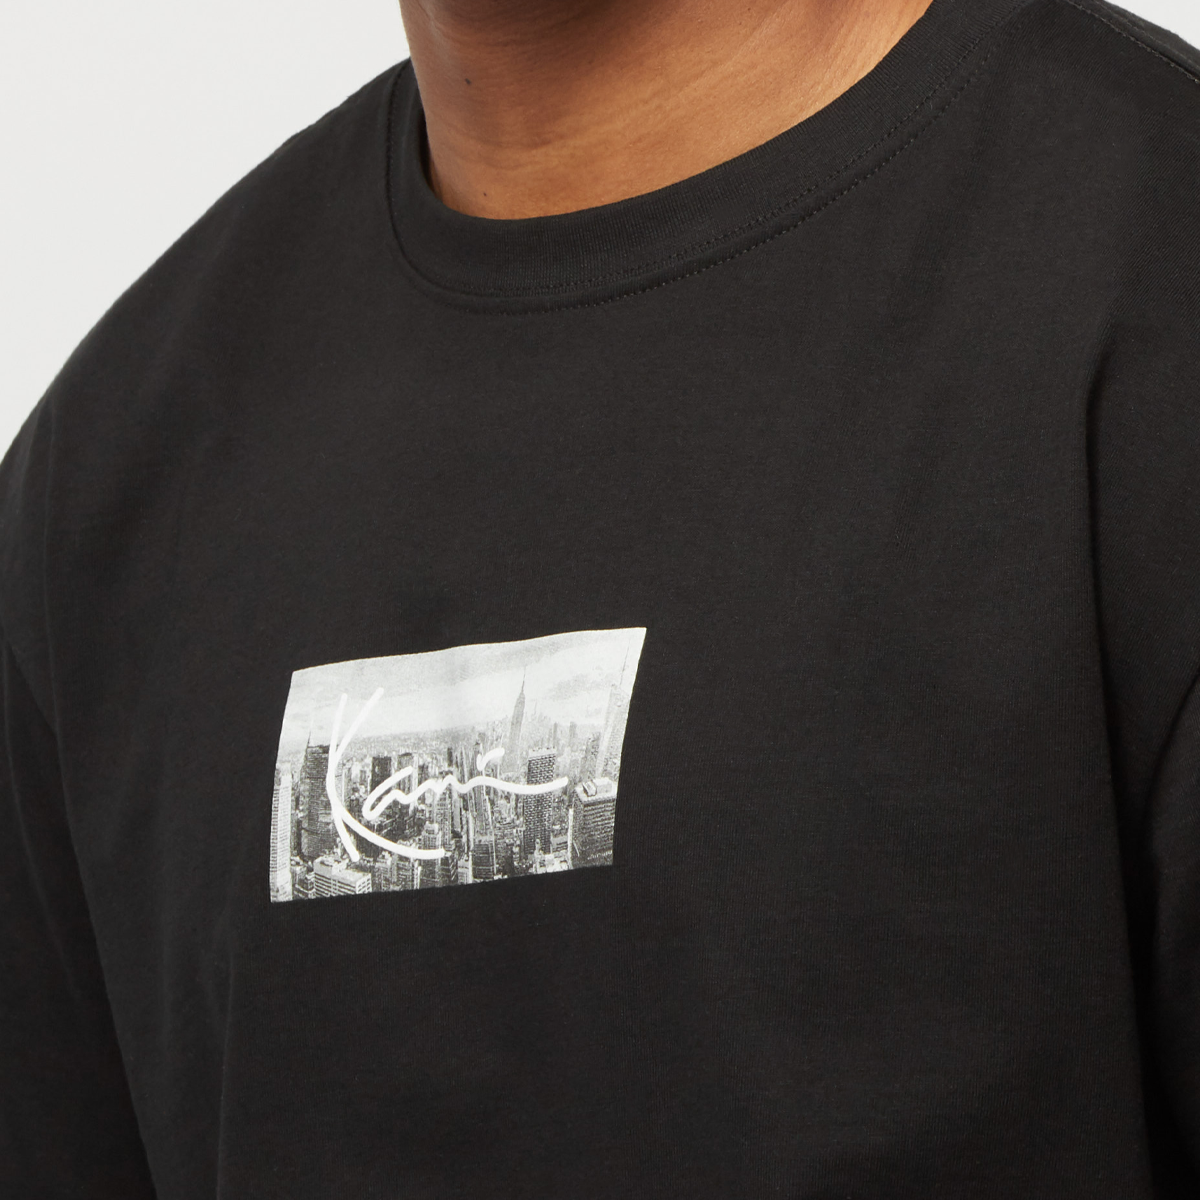 Karl Kani Small Signature Nyc Print Tee T-shirts Kleding Black maat: XS beschikbare maaten:XS S M L XL XXL